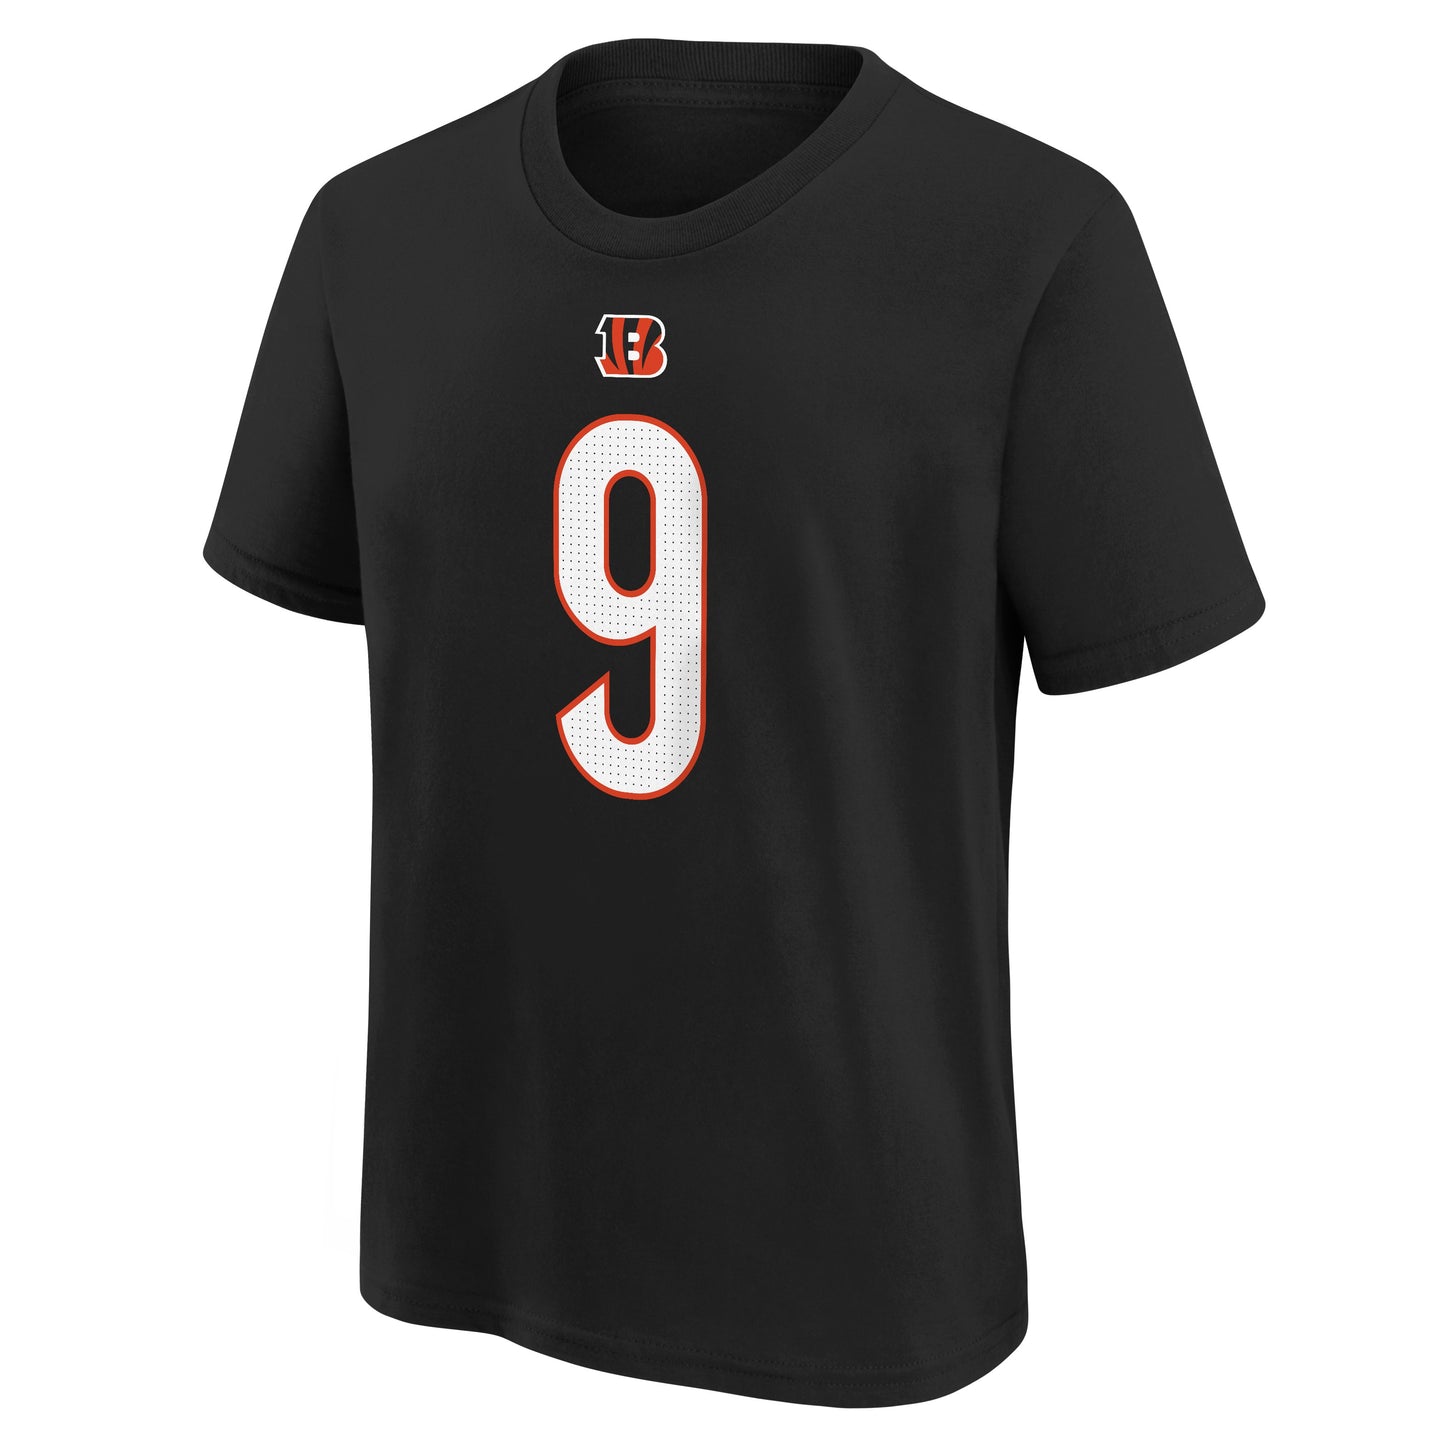 Youth Joe Burrow Cincinnati Bengals Nike Black FUSE Player Pride Name & Number T-Shirt